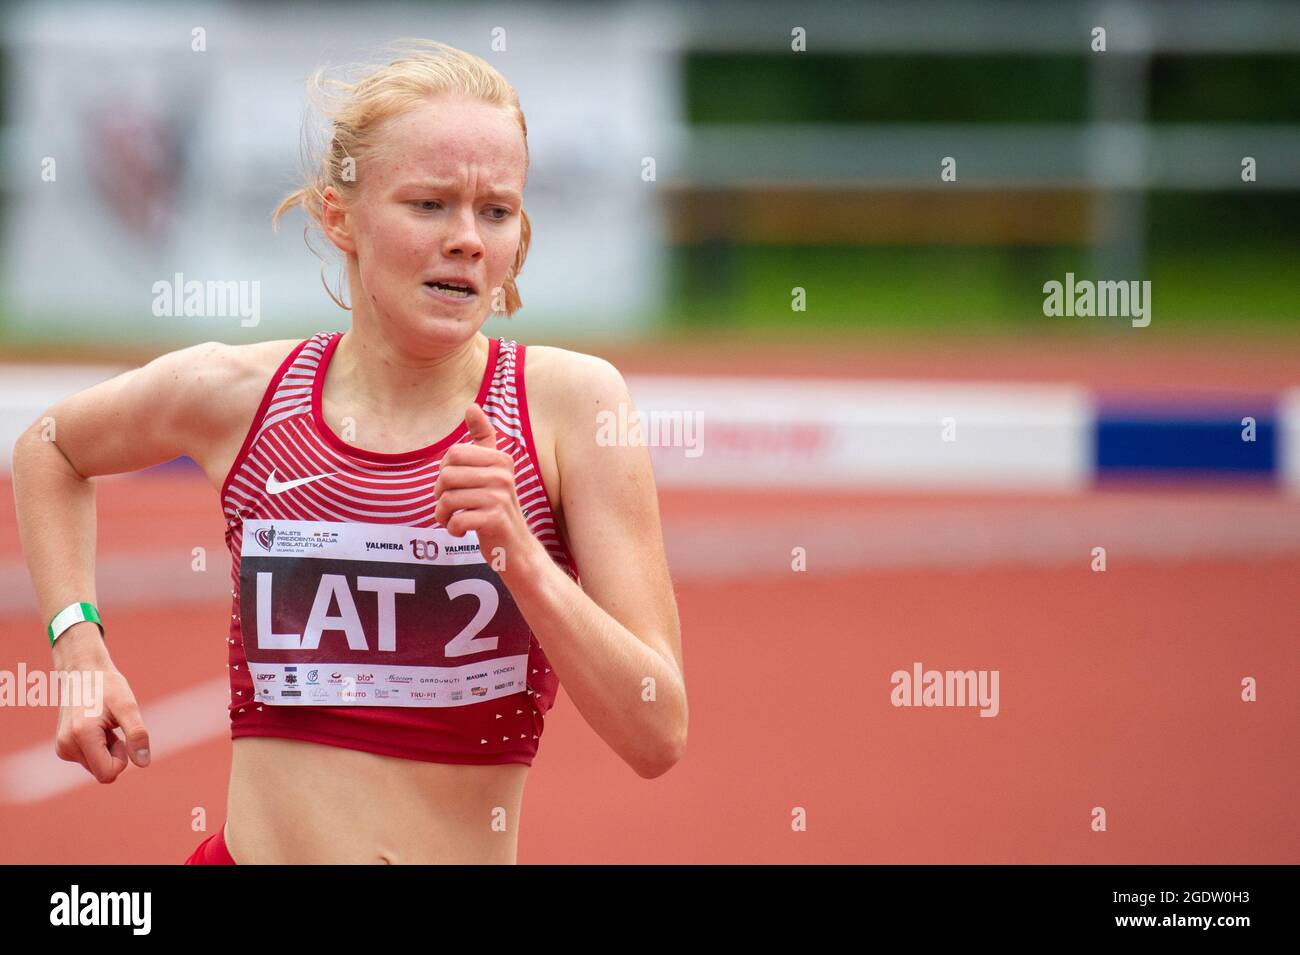 2021-08-14. Valmiera, Latvija. The Latvian runner Agate Caune. Stock Photo